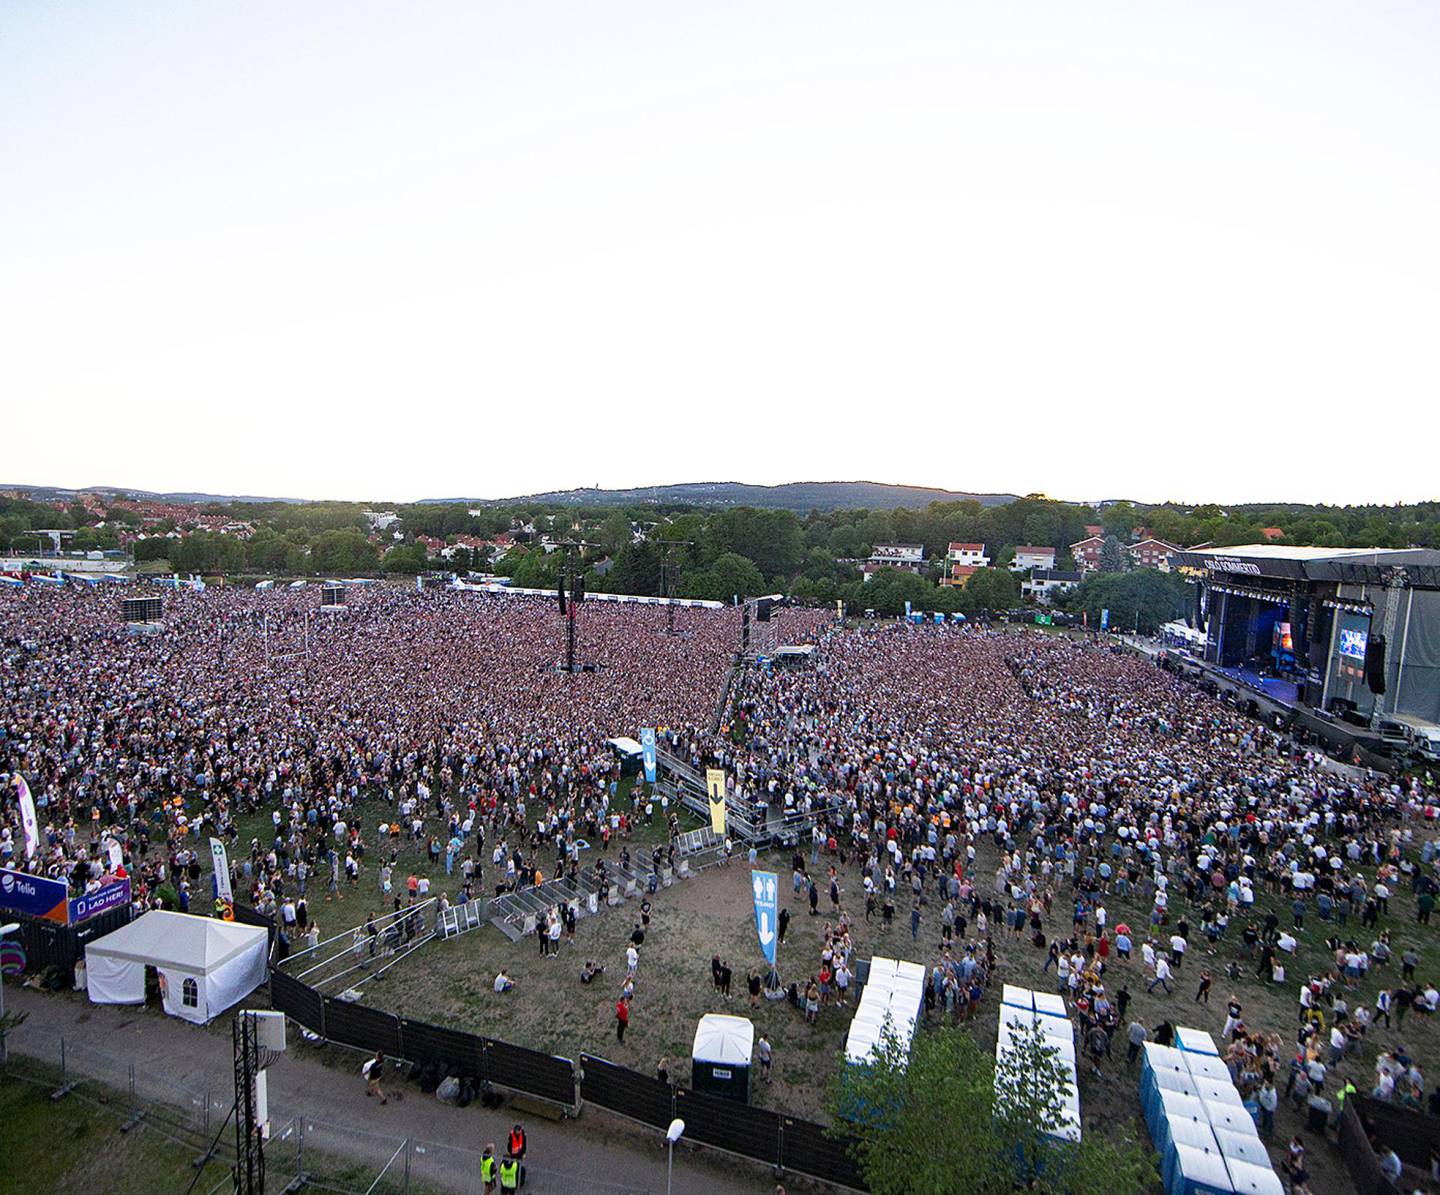 Fra konserten på Voldsløkka med Eminem 30. juni i år. Med over 55.000 betalende     publikummere var dette den største betal-konserten i Norge noensinne. FOTO: FREDRIK HAGEN/NTB SCANPIX